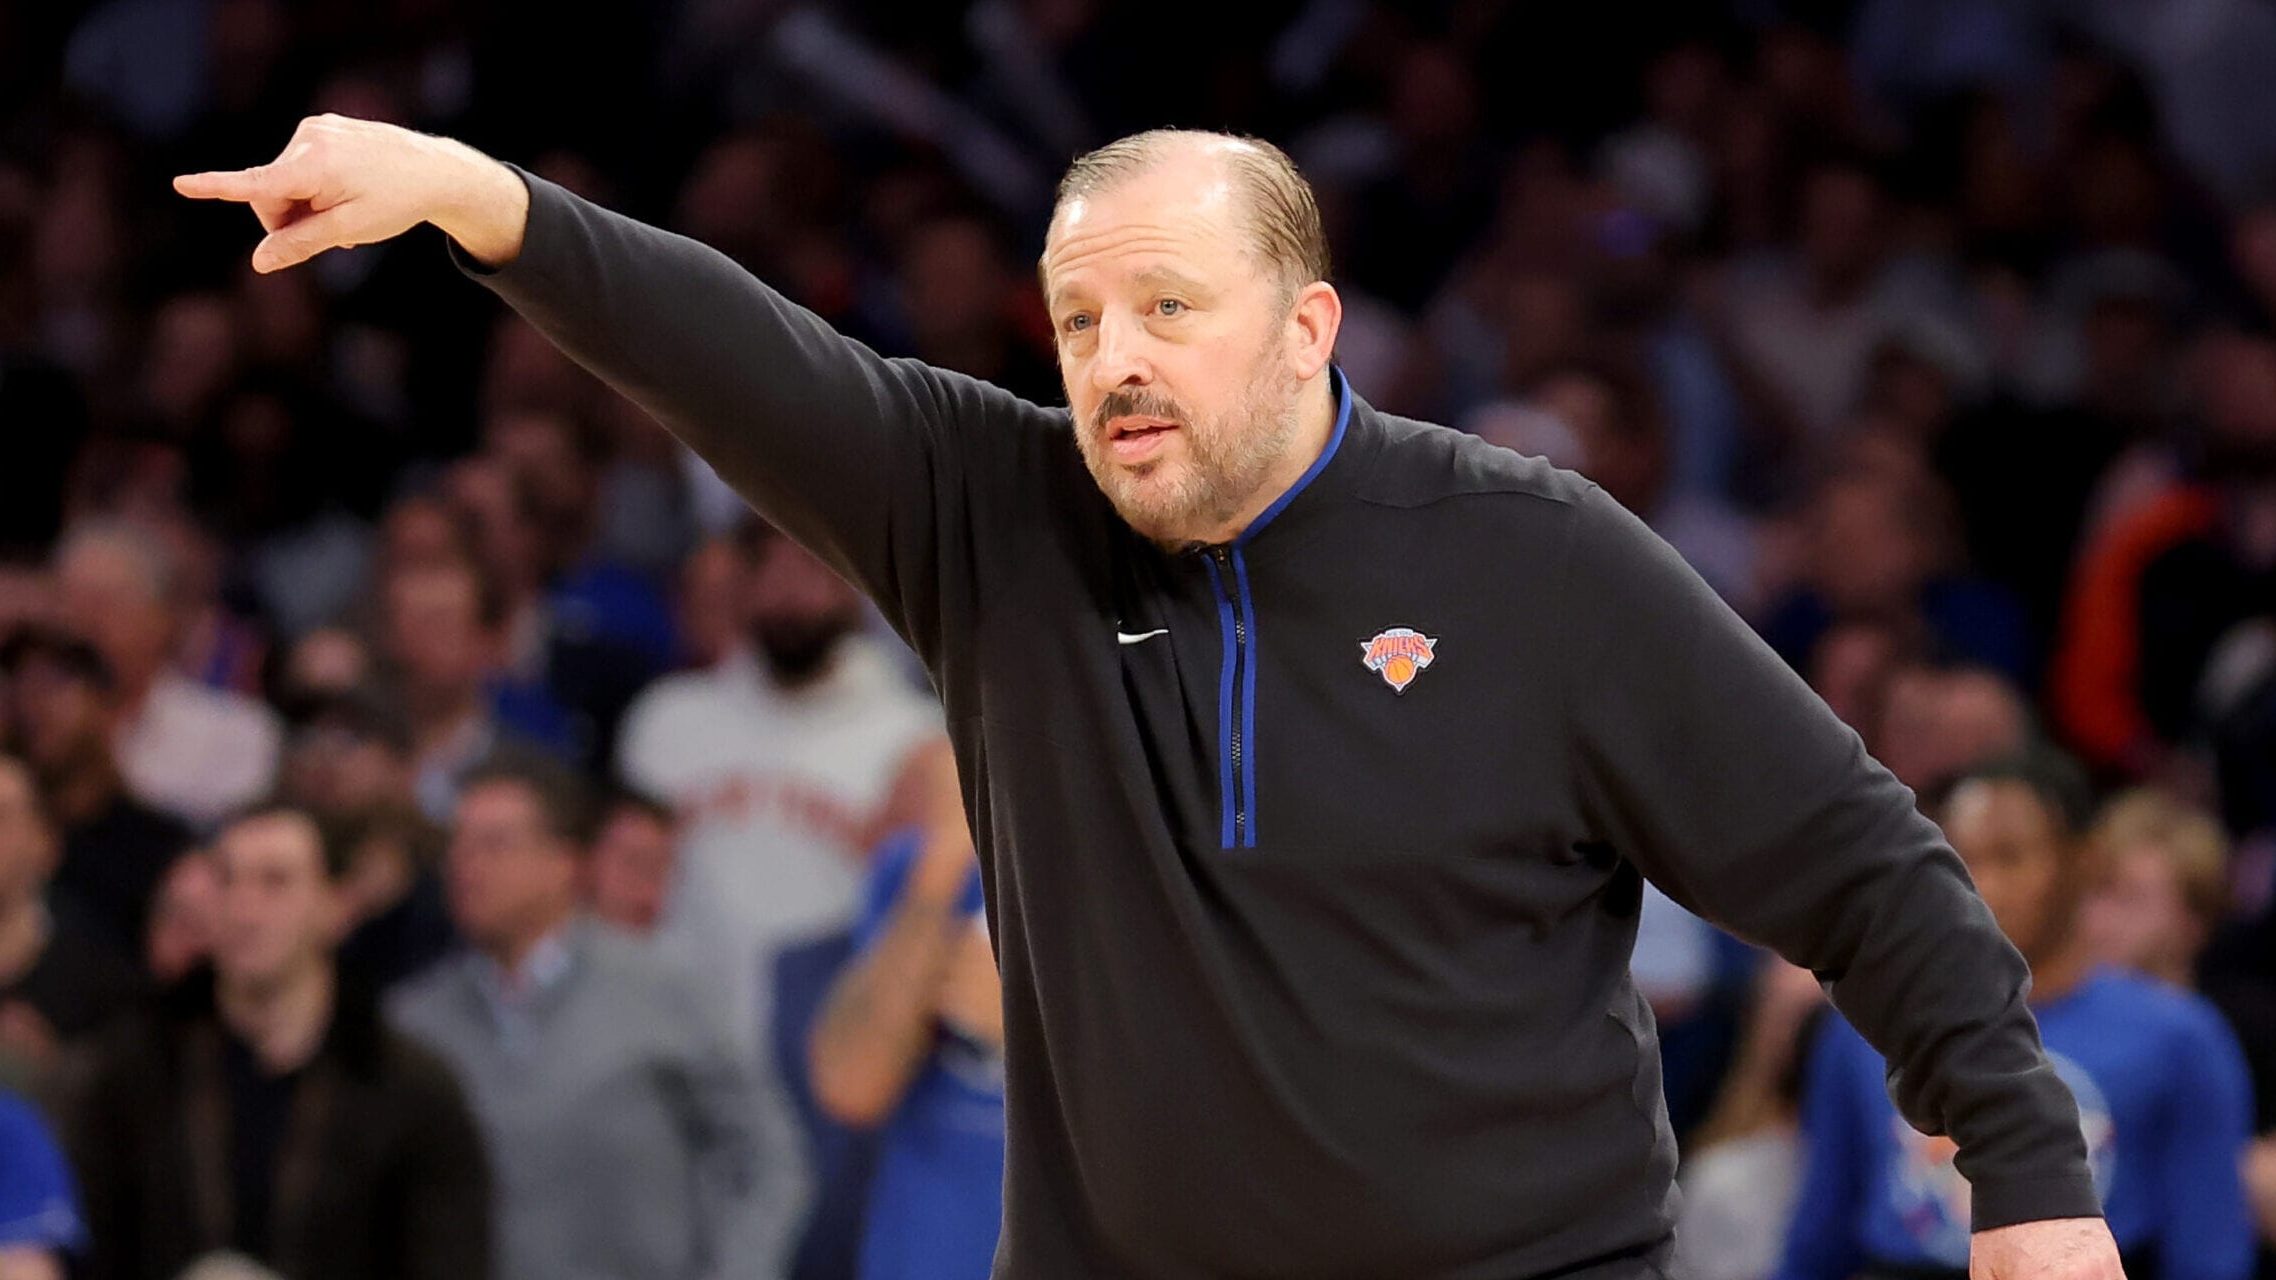 Dopo due sconfitte, i New York Knicks devono invertire la marcia, ritrovando il loro ritmo ed equilibrio, per rimettersi in vantaggio nella serie contro gli Indiana Pacers